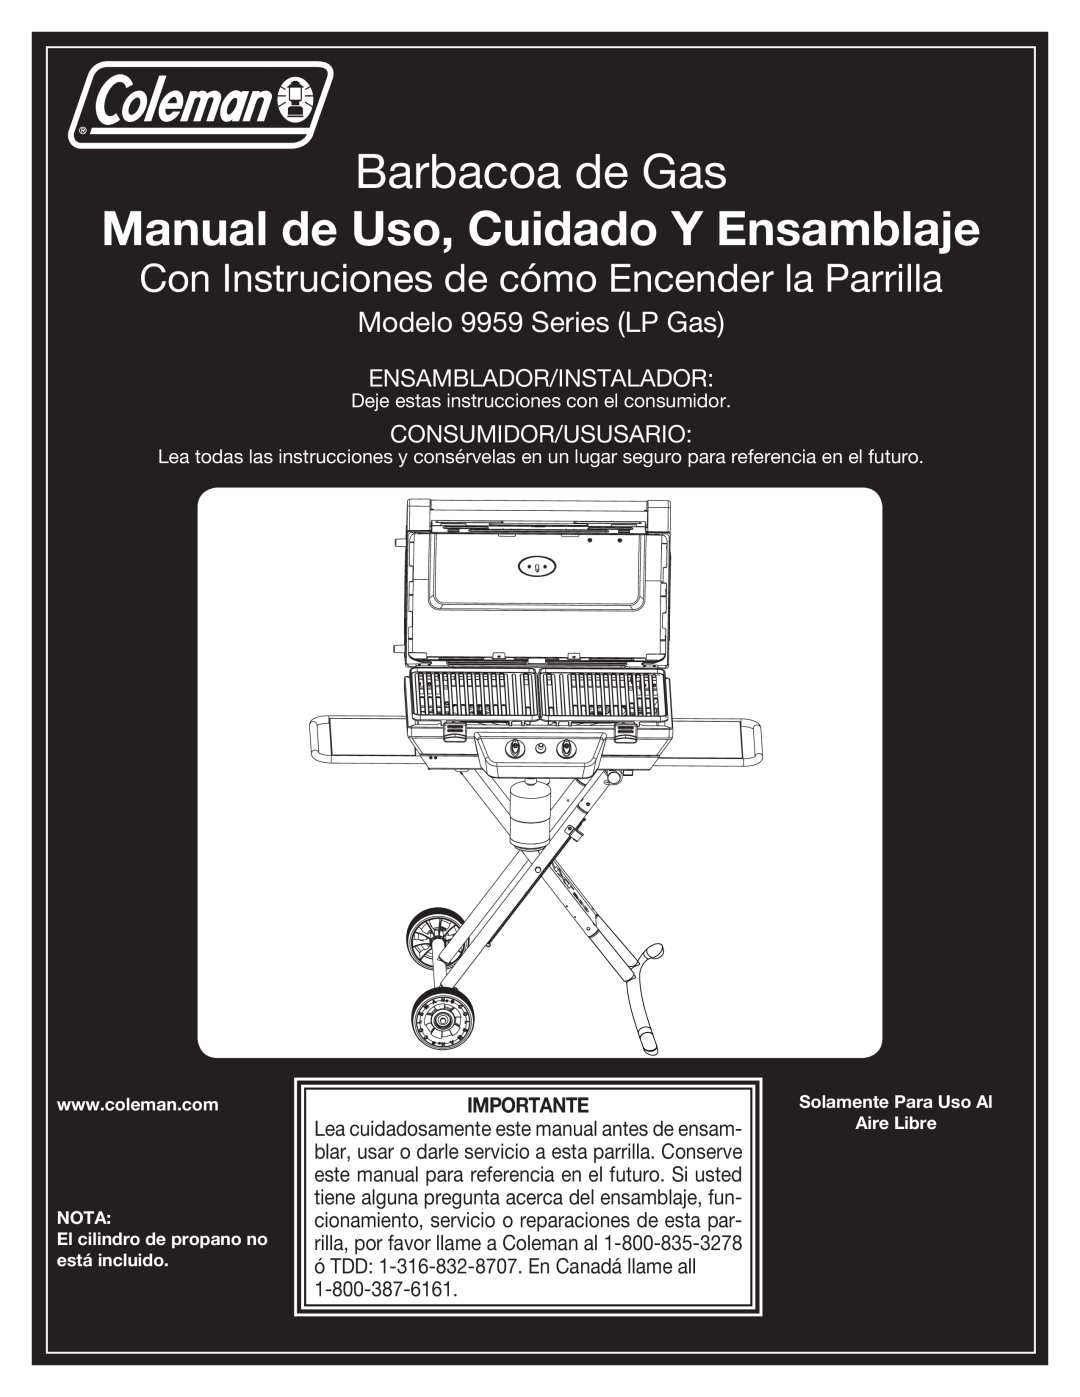 Coleman 9959 manual Barbacoa de Gas, Manual de Uso, Cuidado Y Ensamblaje, Con Instruciones de cómo Encender la Parrilla 